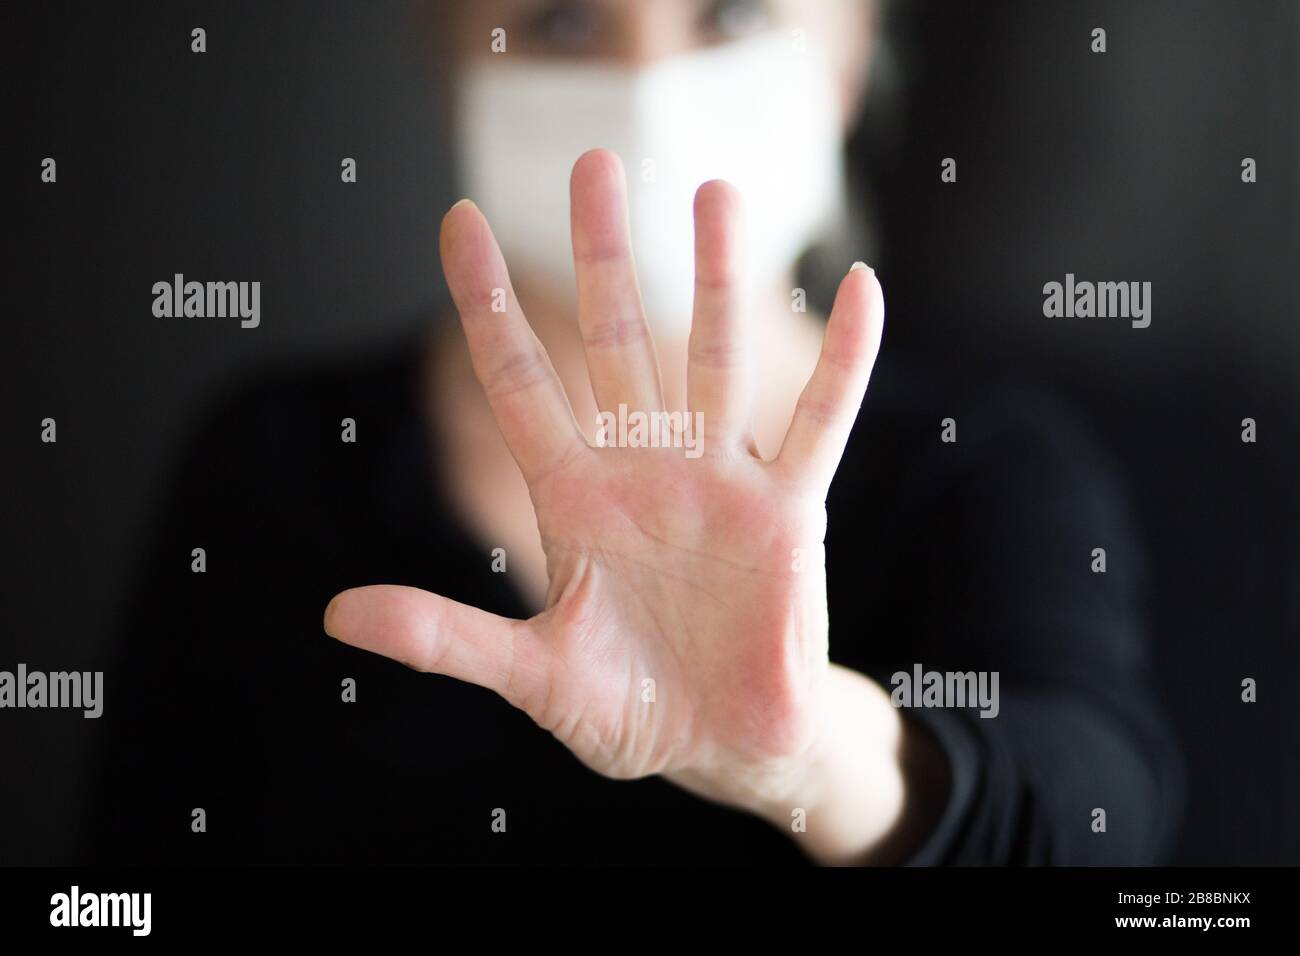 Une femme âgée portant un masque, montre des mains propres et montre un geste d'arrêt des mains pour arrêter l'éclosion du virus corona. Coronavirus et symptômes du virus épidémique. Banque D'Images